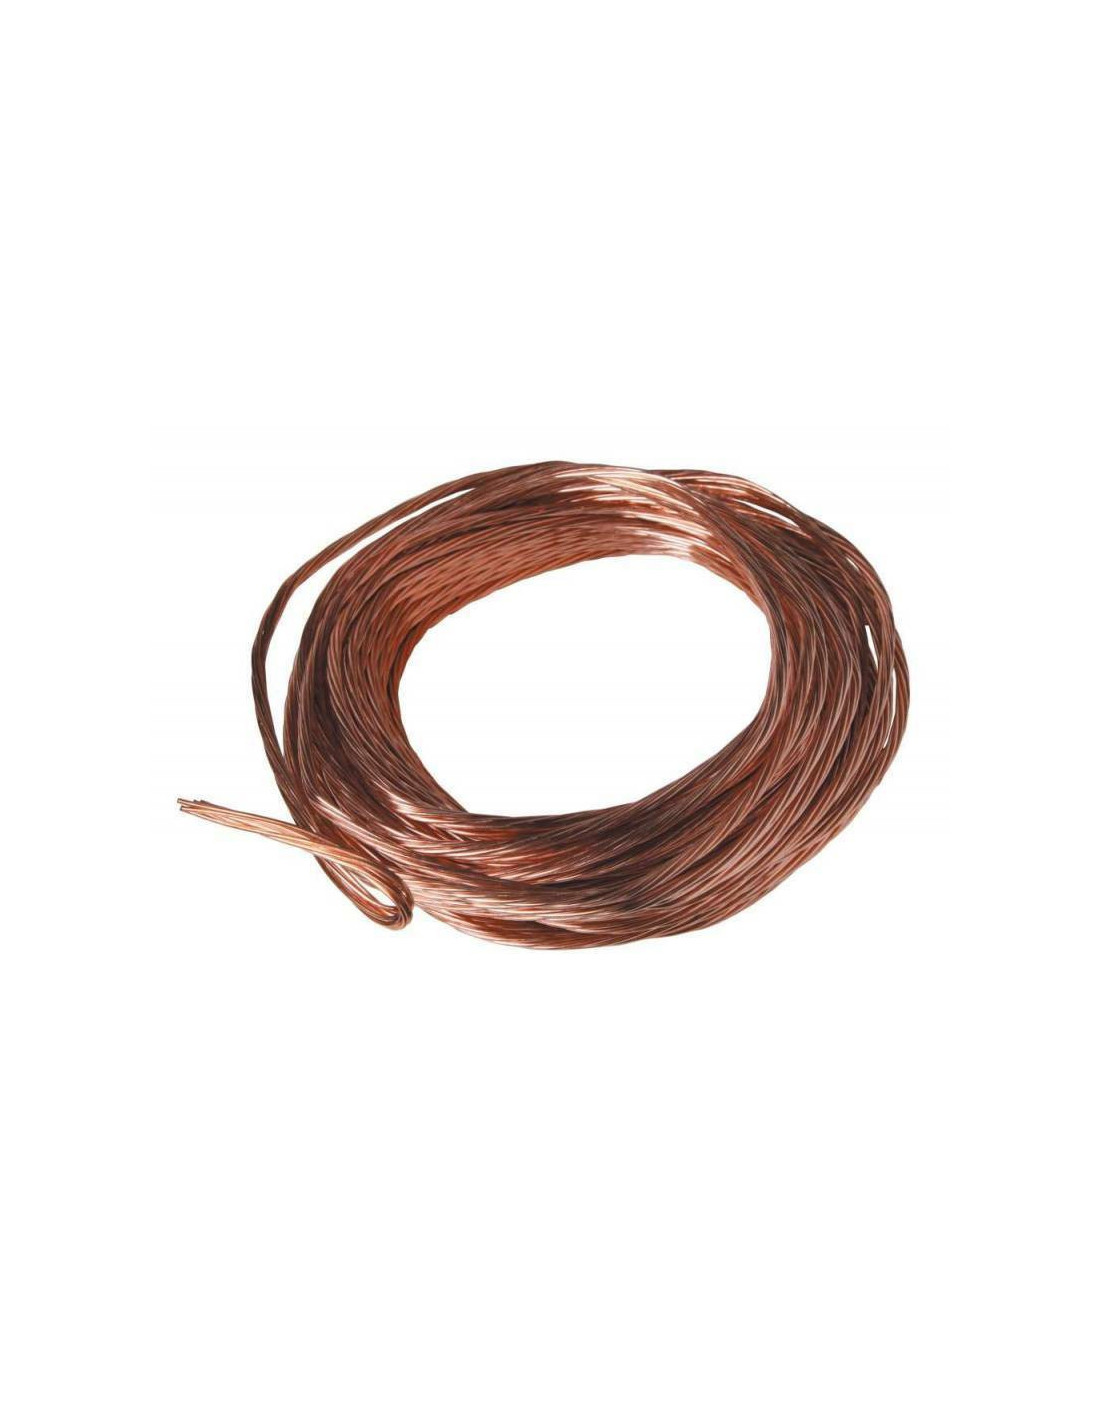 Câble , fil cuivre nu 25 mm² pour prise et mise à la terre 10 mètres